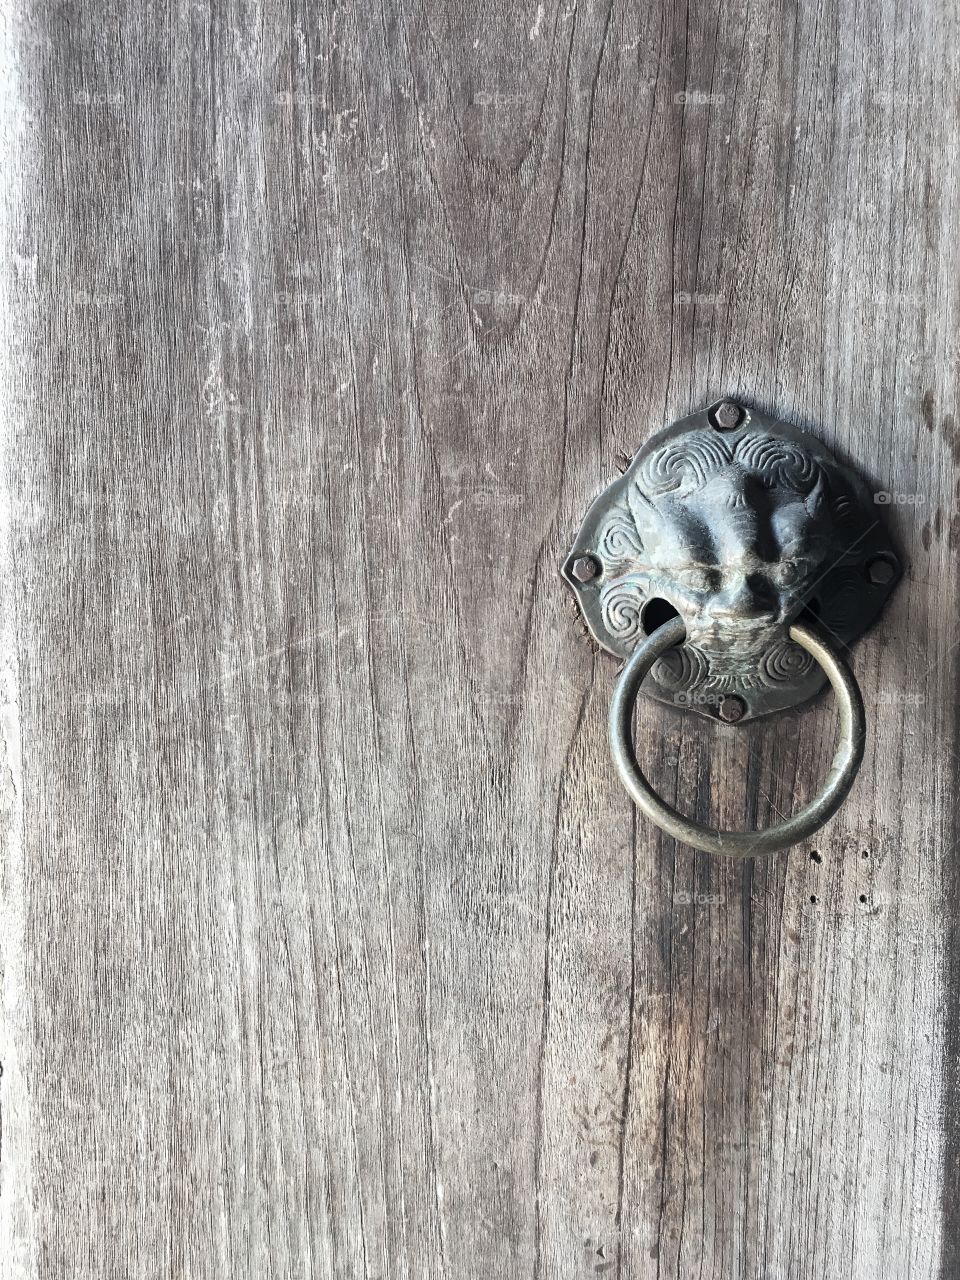 Antique doorknocker
